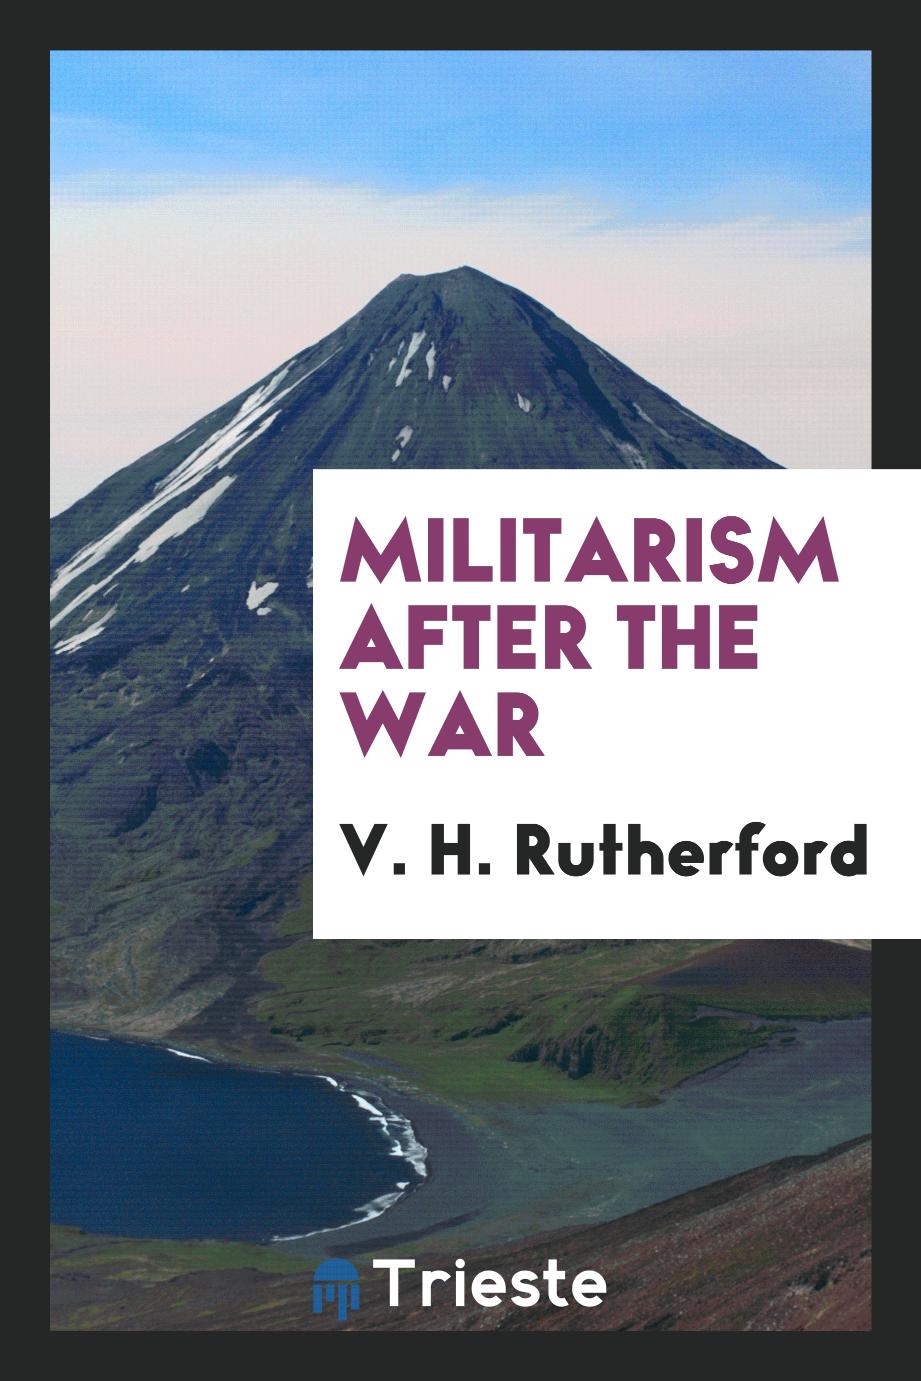 Militarism after the war